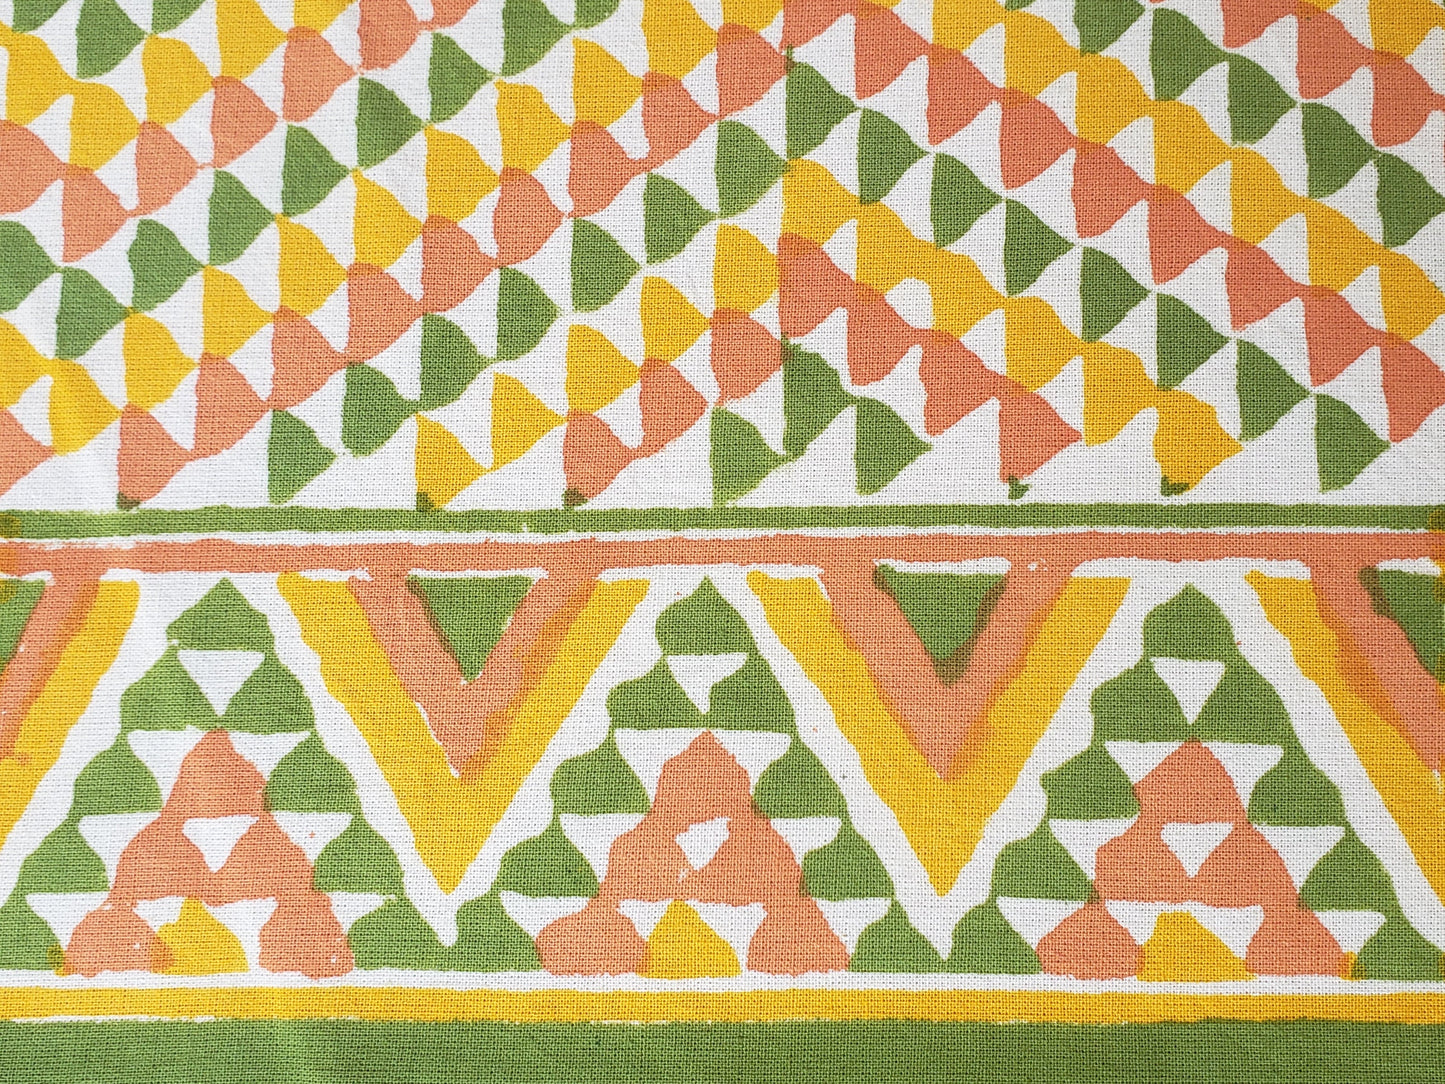 Sobrecama 100% algodón estampado a mano, con diseño en triángulos color ocre, verde y amarillo. Hecho en la India.